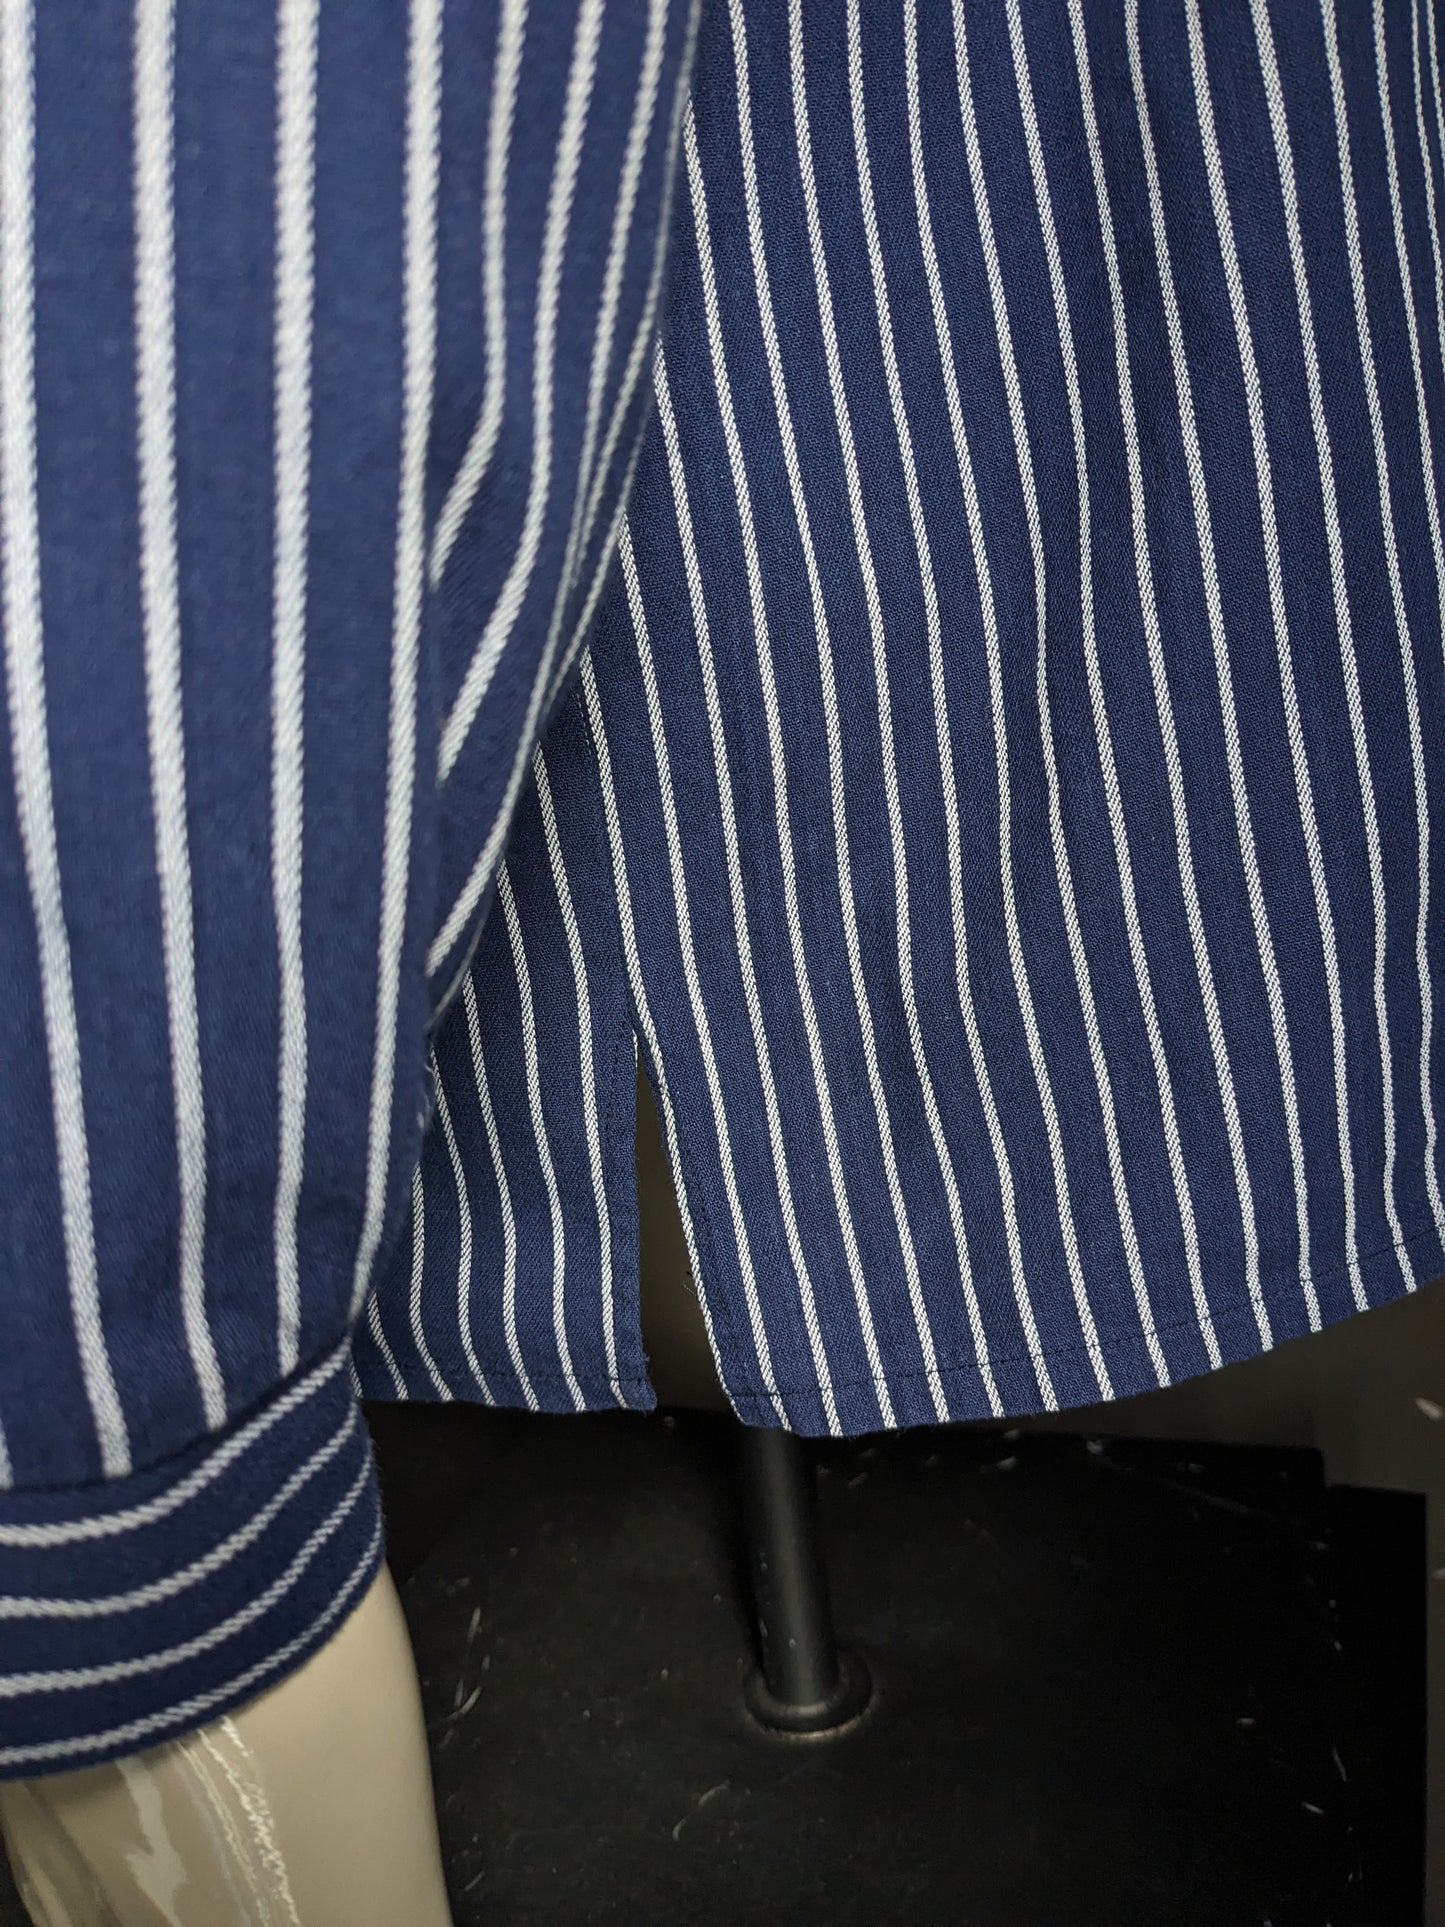 Suéter / camisa Vintage Modas Polo. PARACIÓN / AGRICULTERS / COLLAR DE MAO. Blanco azul rayado. Tamaño xl.